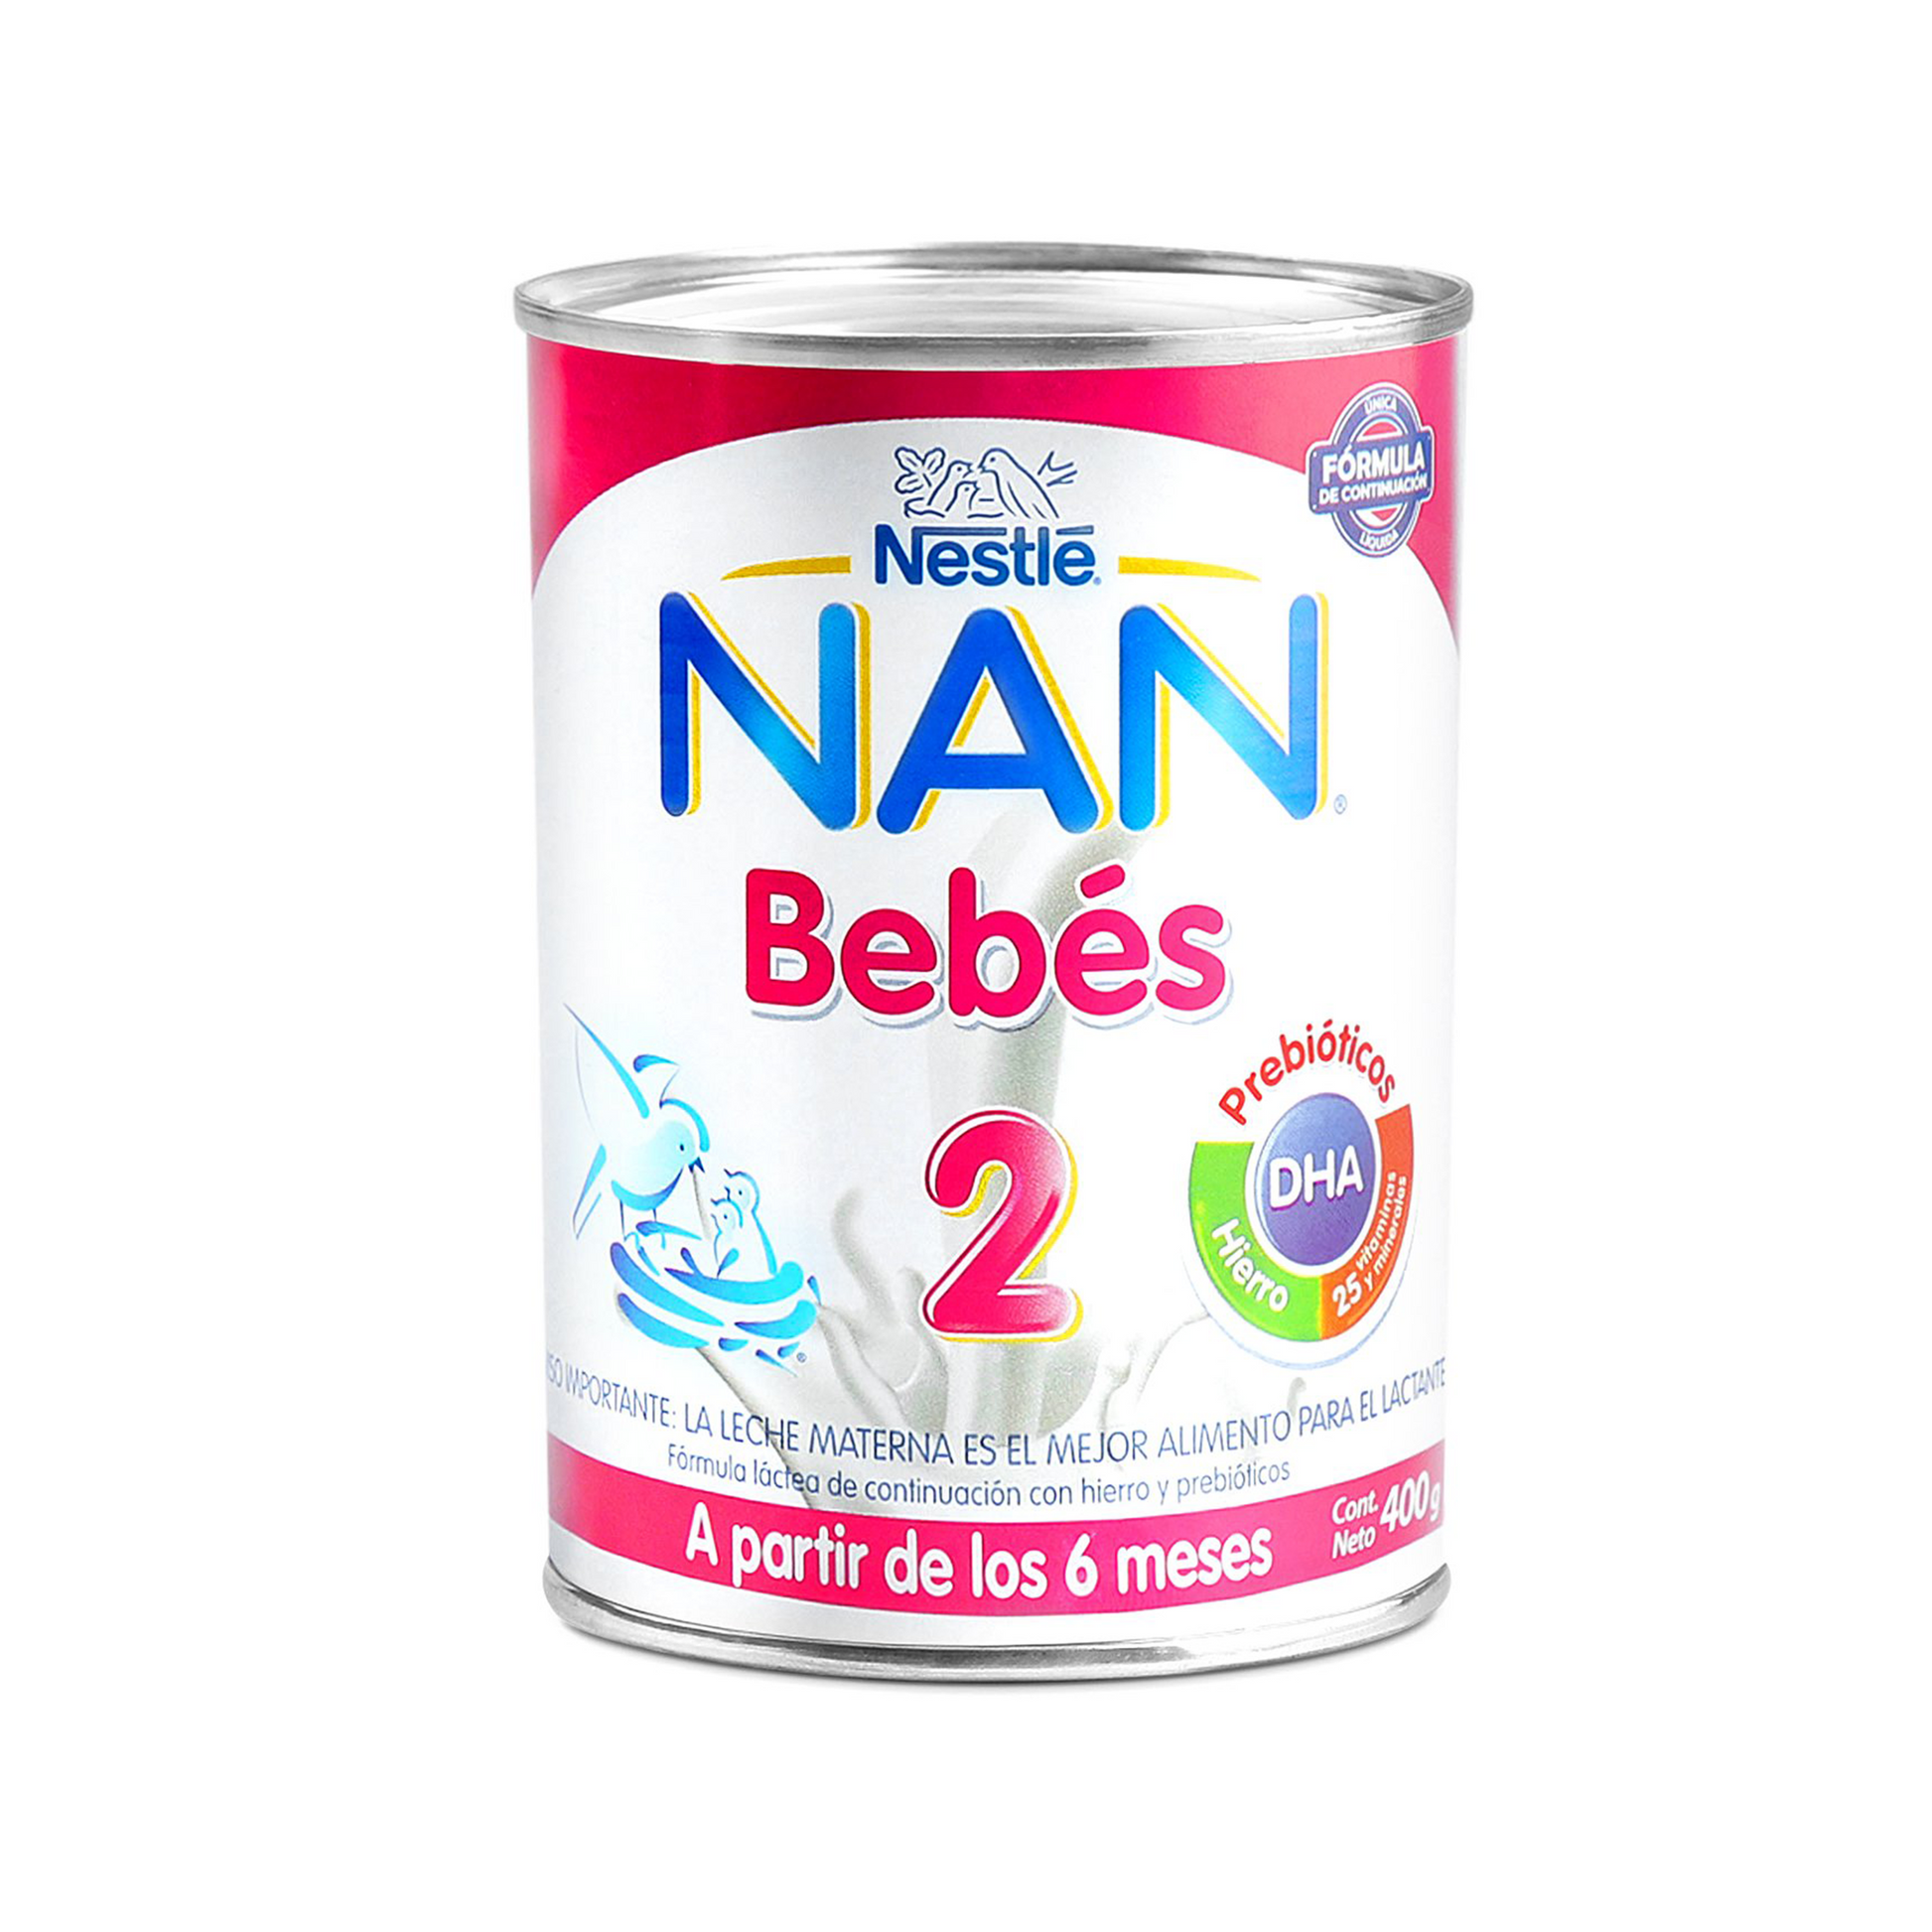 NAN® 2 bebés pack x10 unidades de 400 gr.